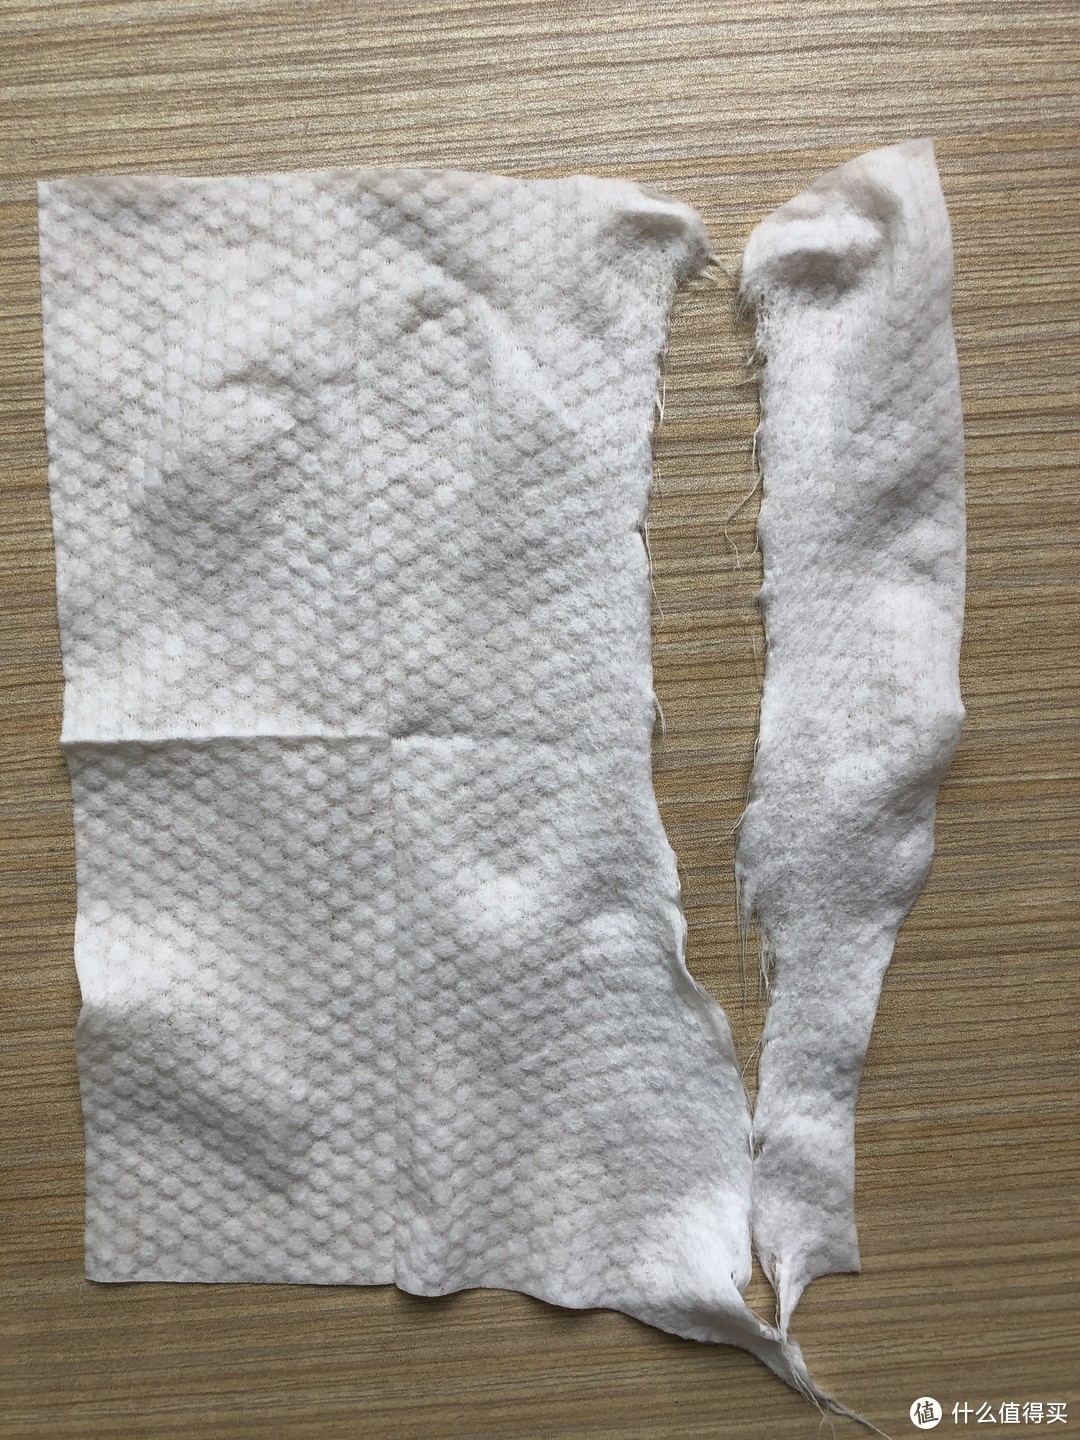 一款薄荷味的湿巾——柚家清凉柔湿巾轻评测